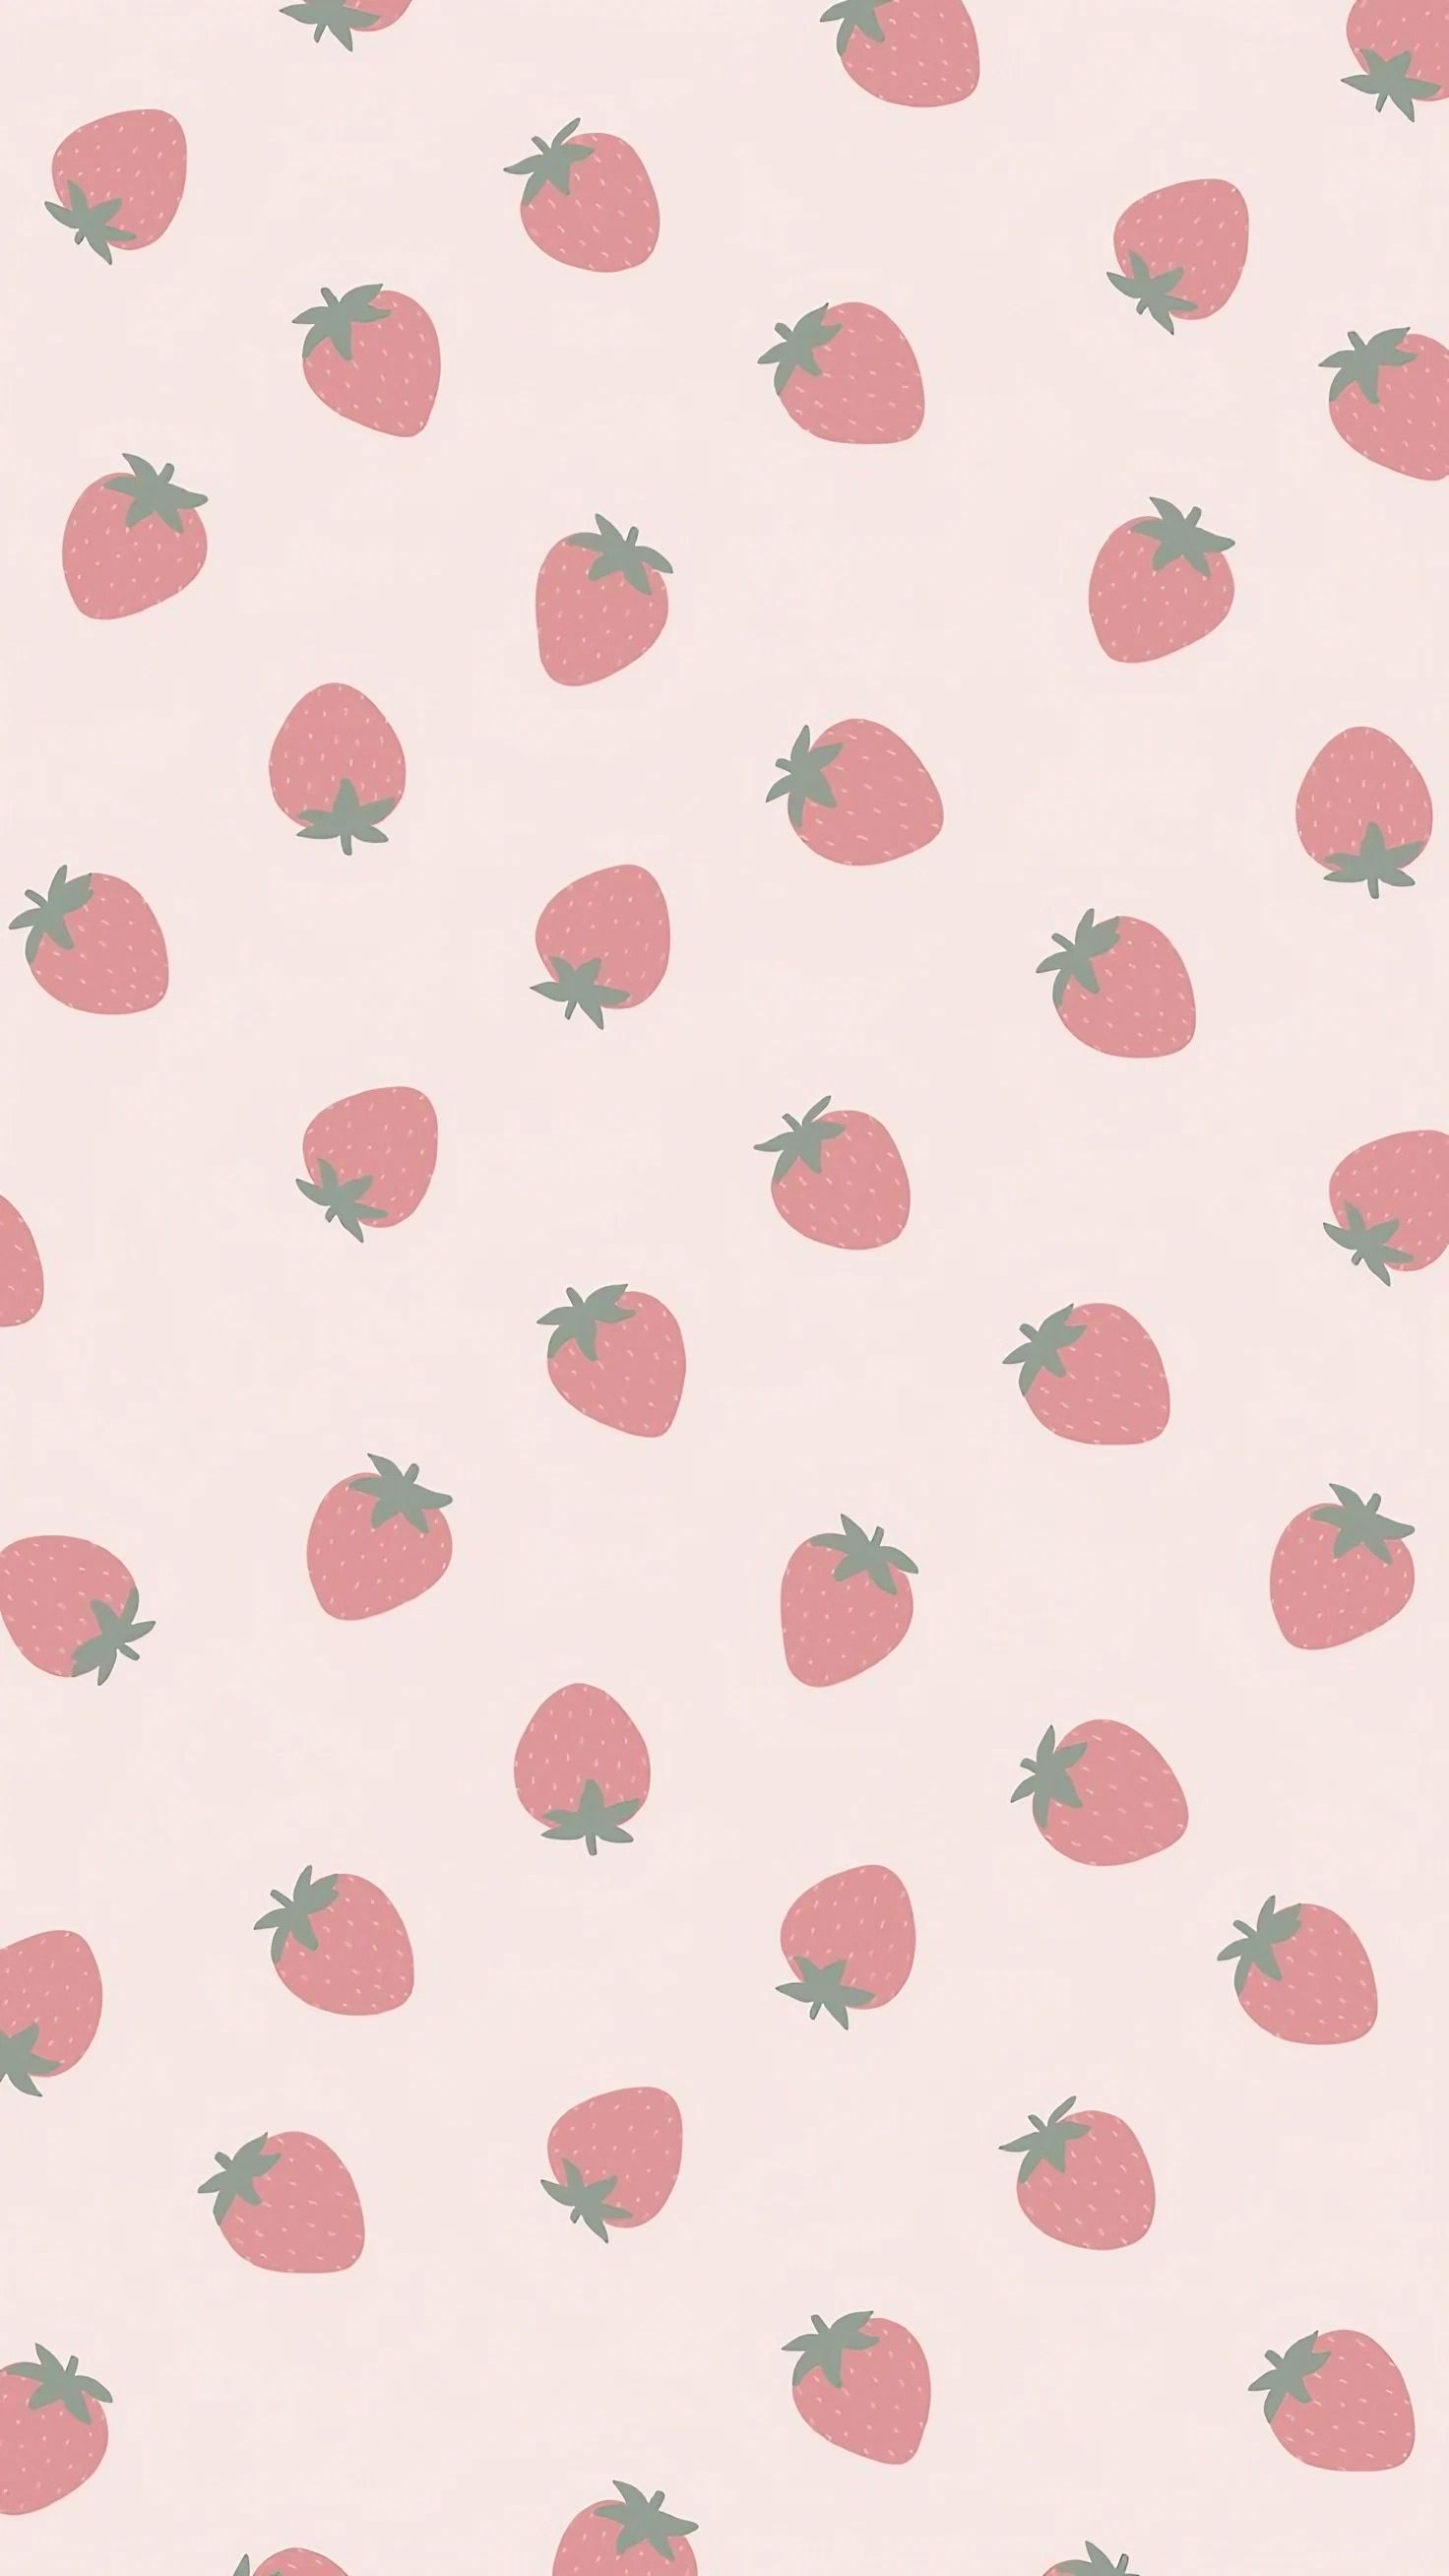  Zeichnungen Hintergrundbild 1472x2616. Strawberry aesthetic Wallpaper Download